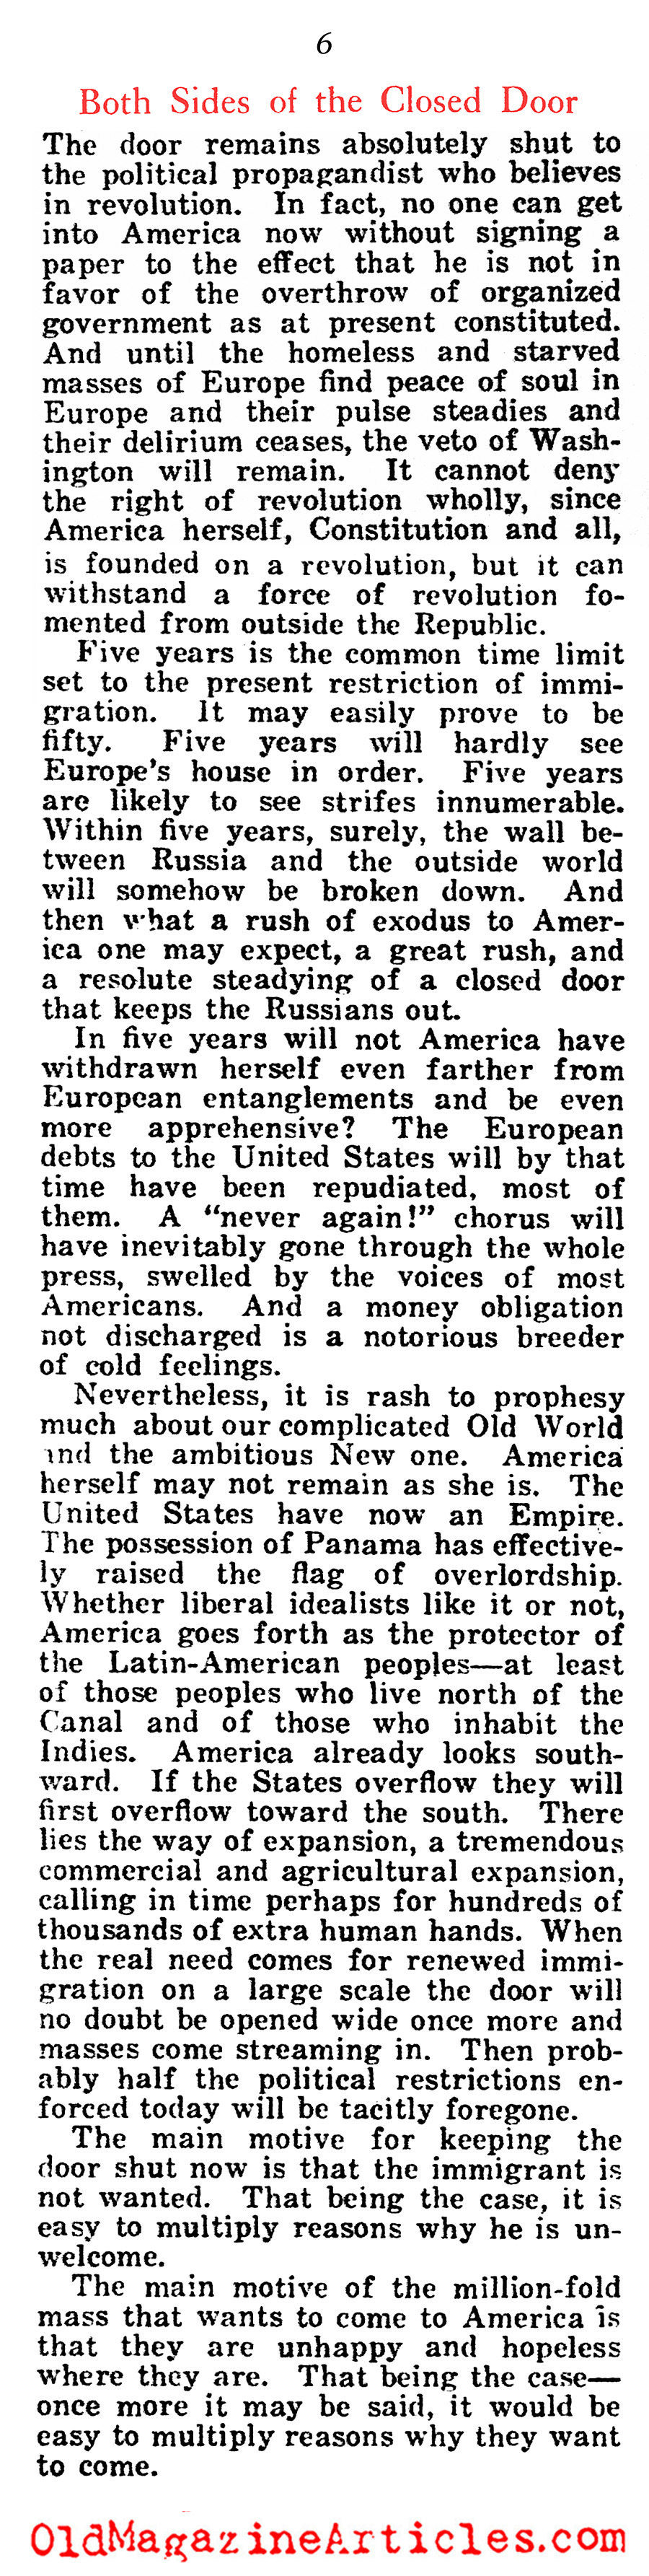 Closing The Golden Door (American Legion Weekly, 1922)